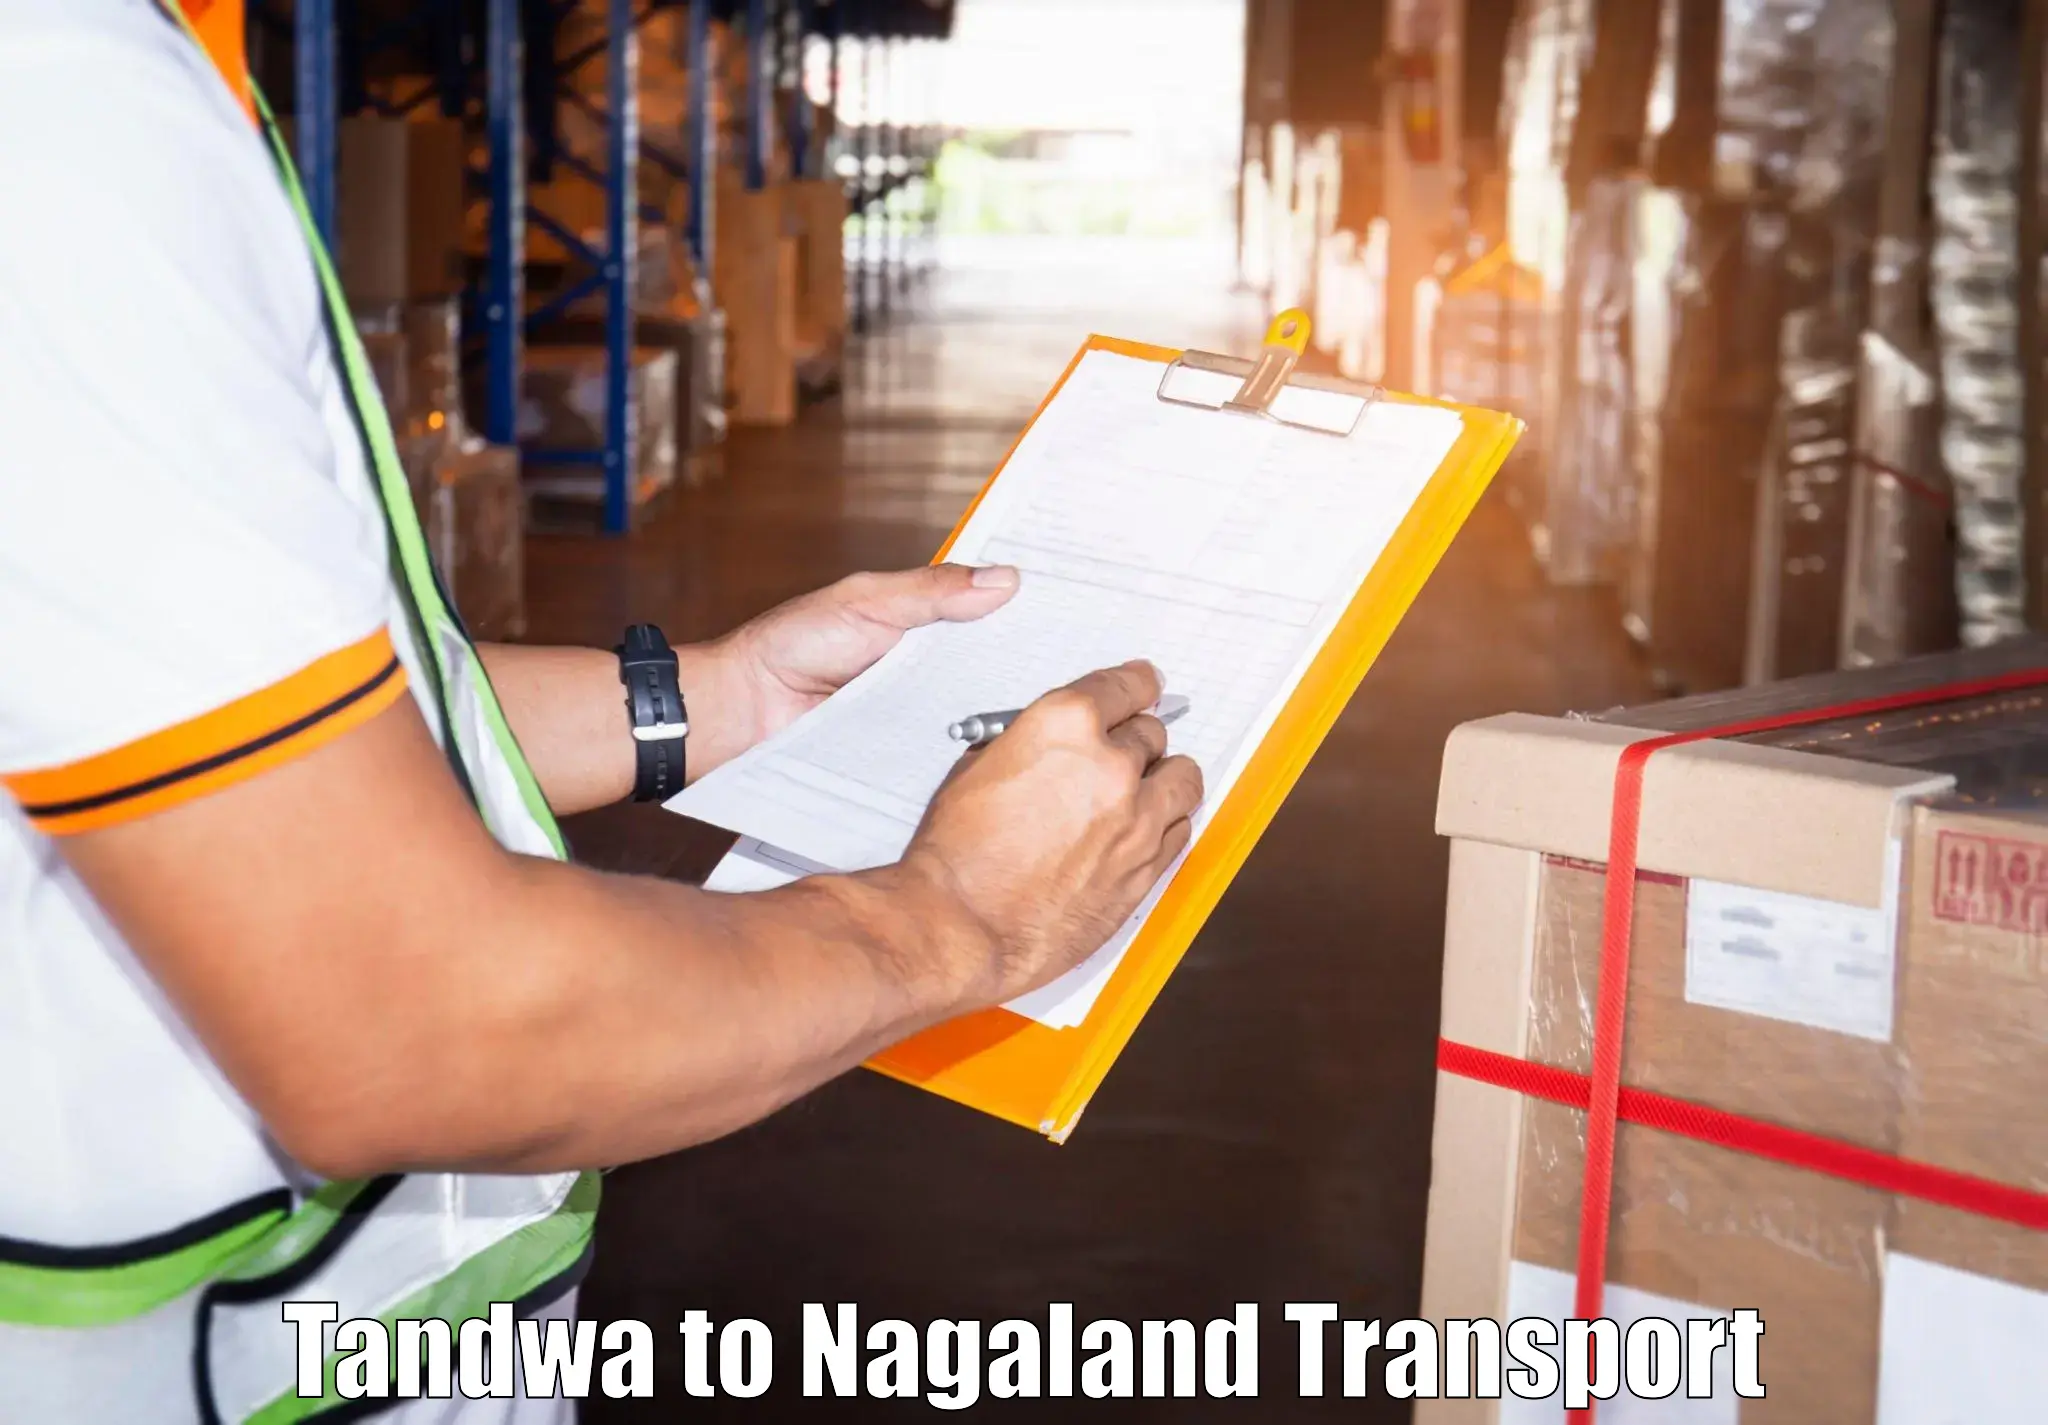 Bike transport service Tandwa to Nagaland